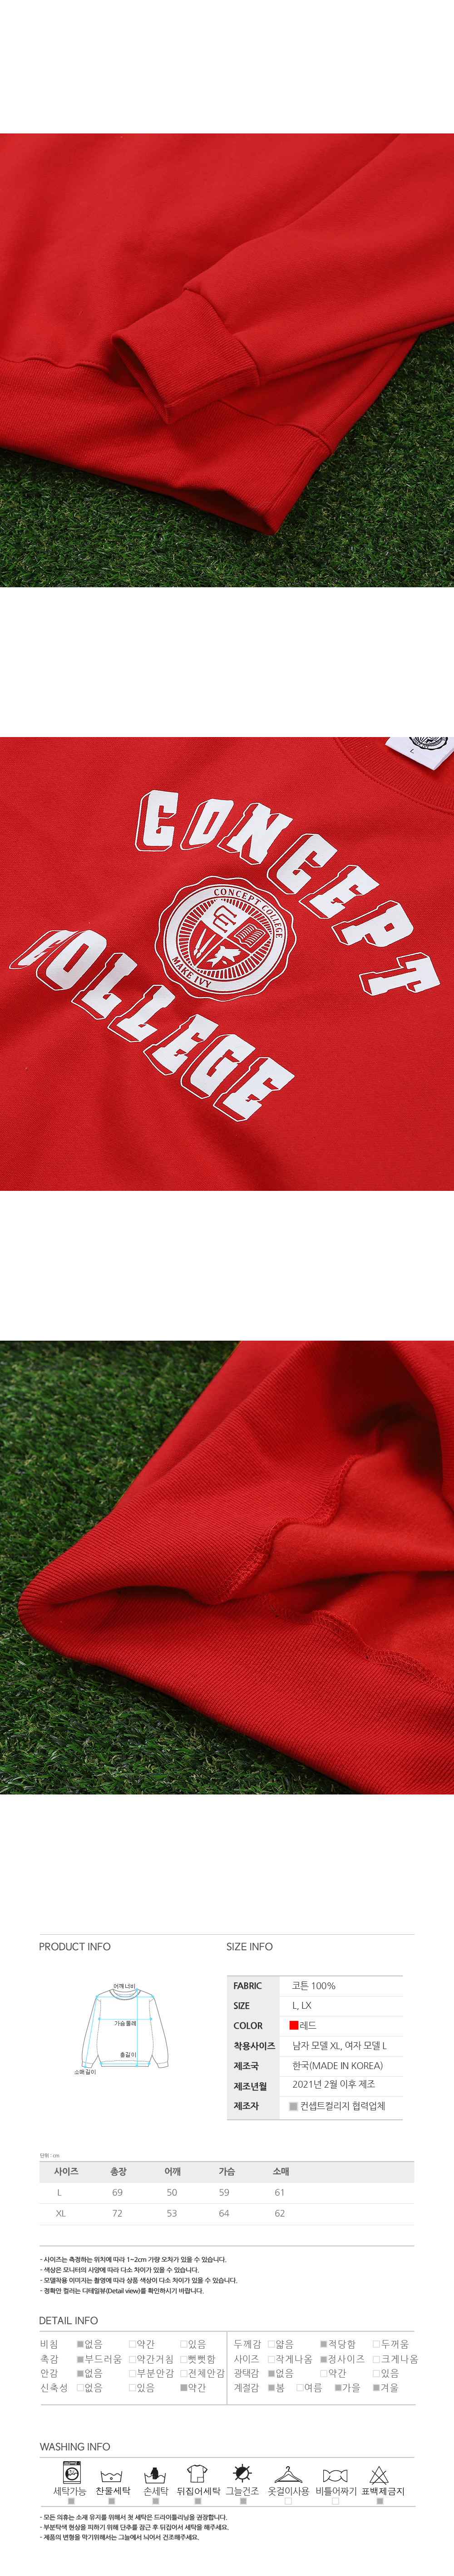 logo+red+sweat+shirts+4.jpg